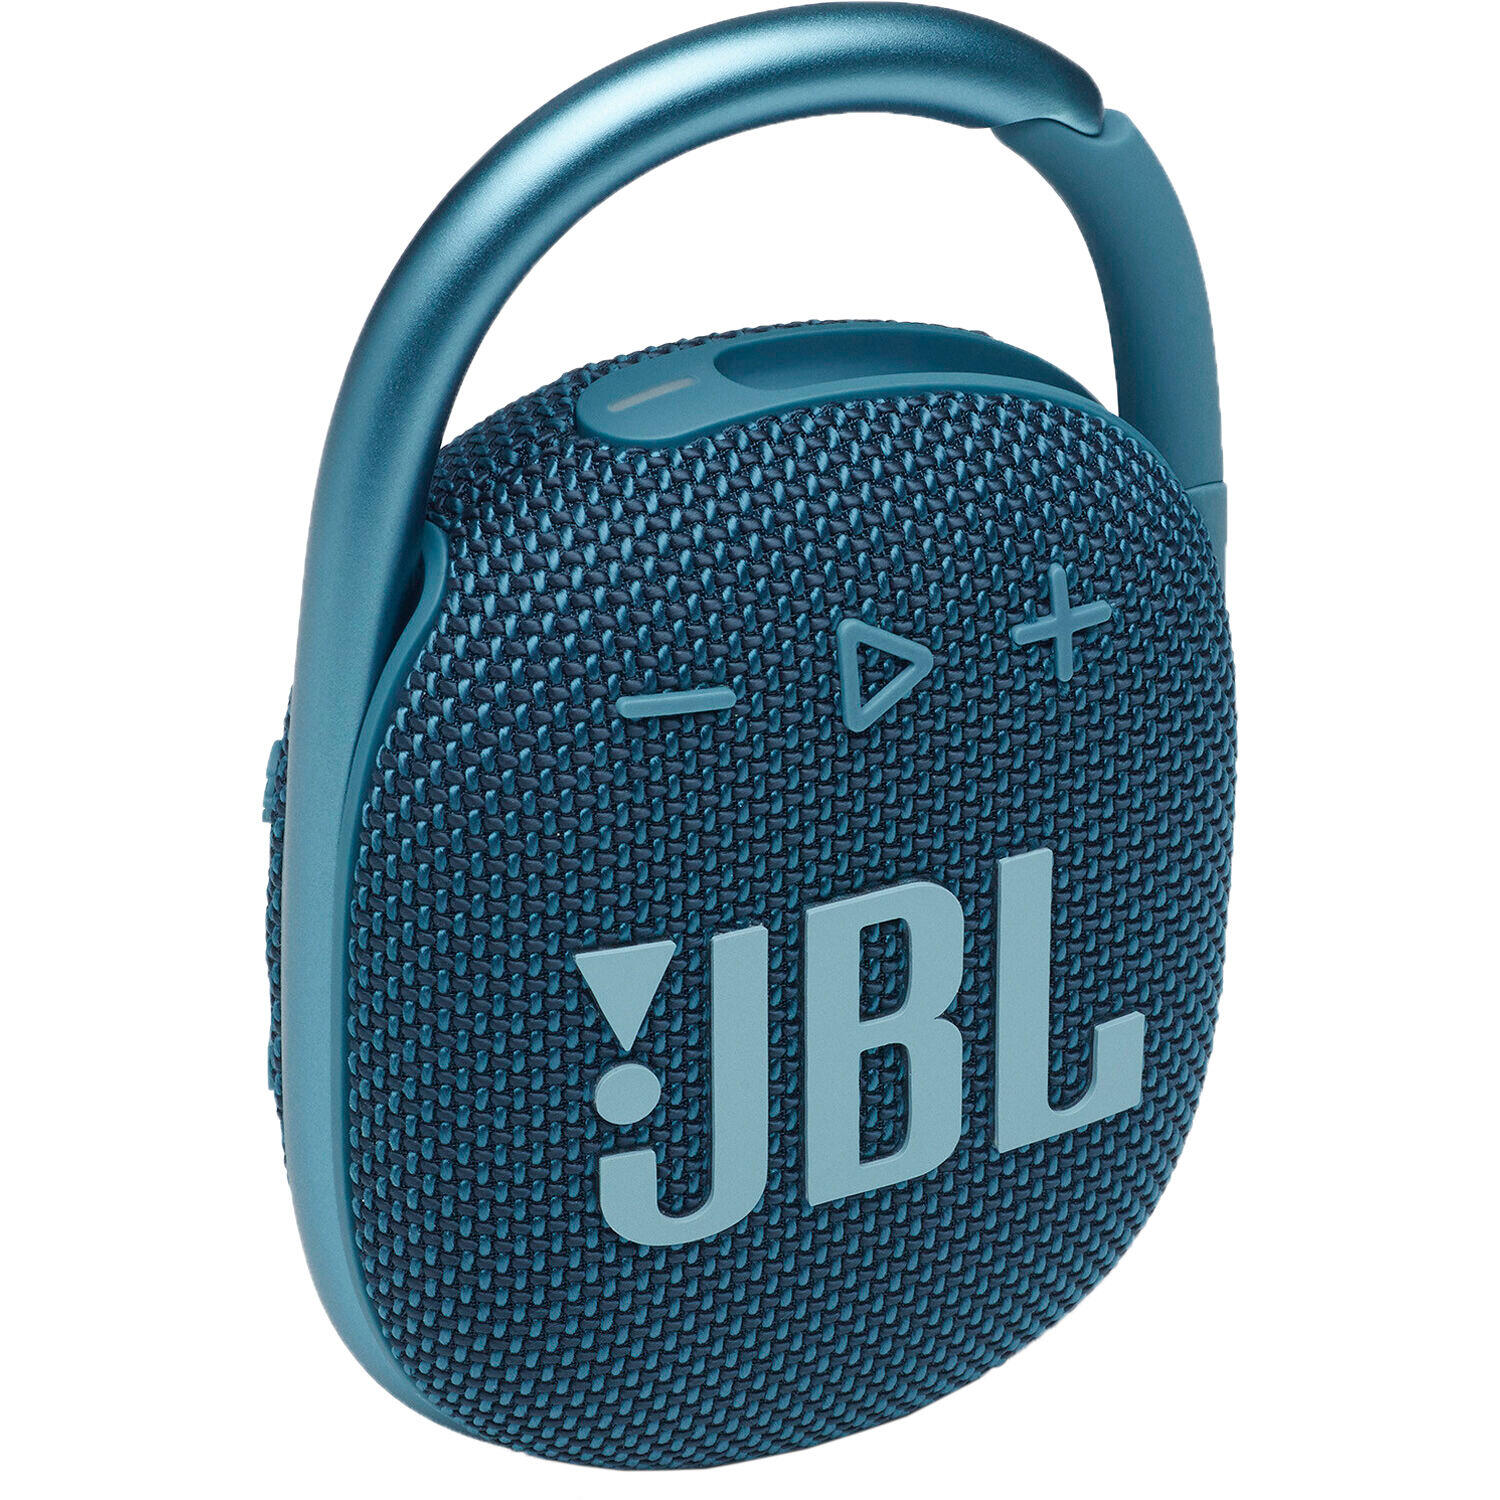 JBL JBL Clip 4 Ultra-portable IPX7 Waterproof Speaker